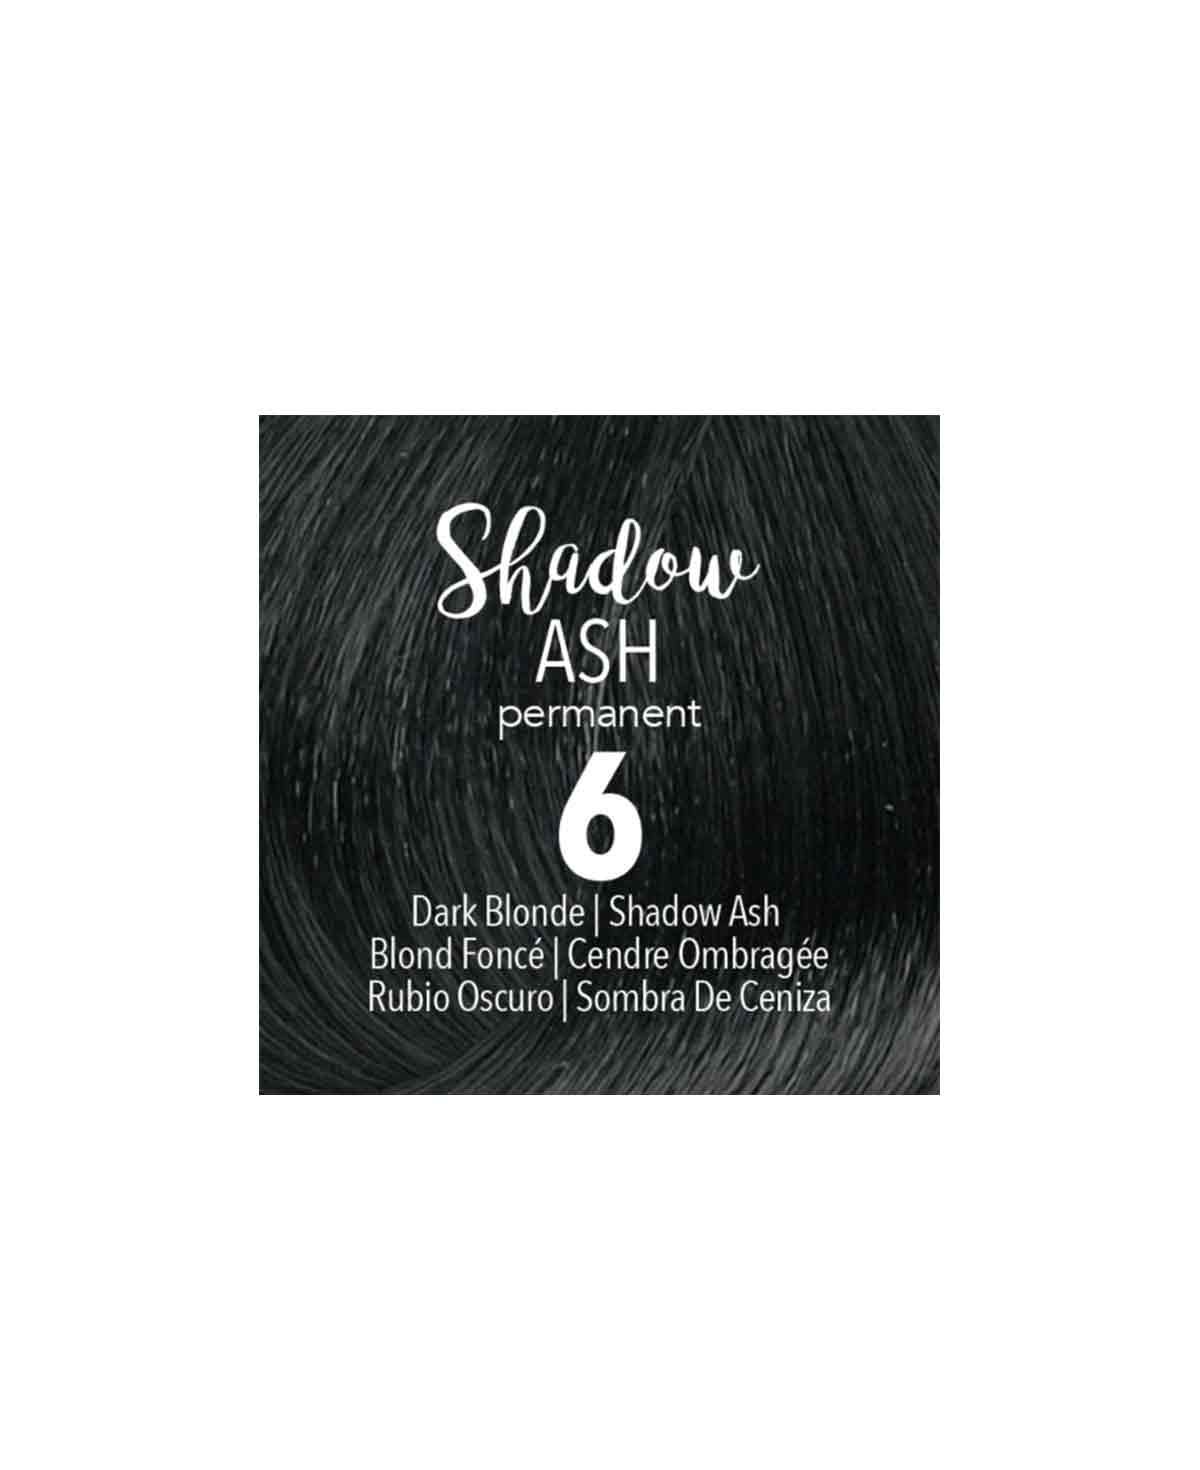 Mydentity - Dark Blonde Shadow Ash 6